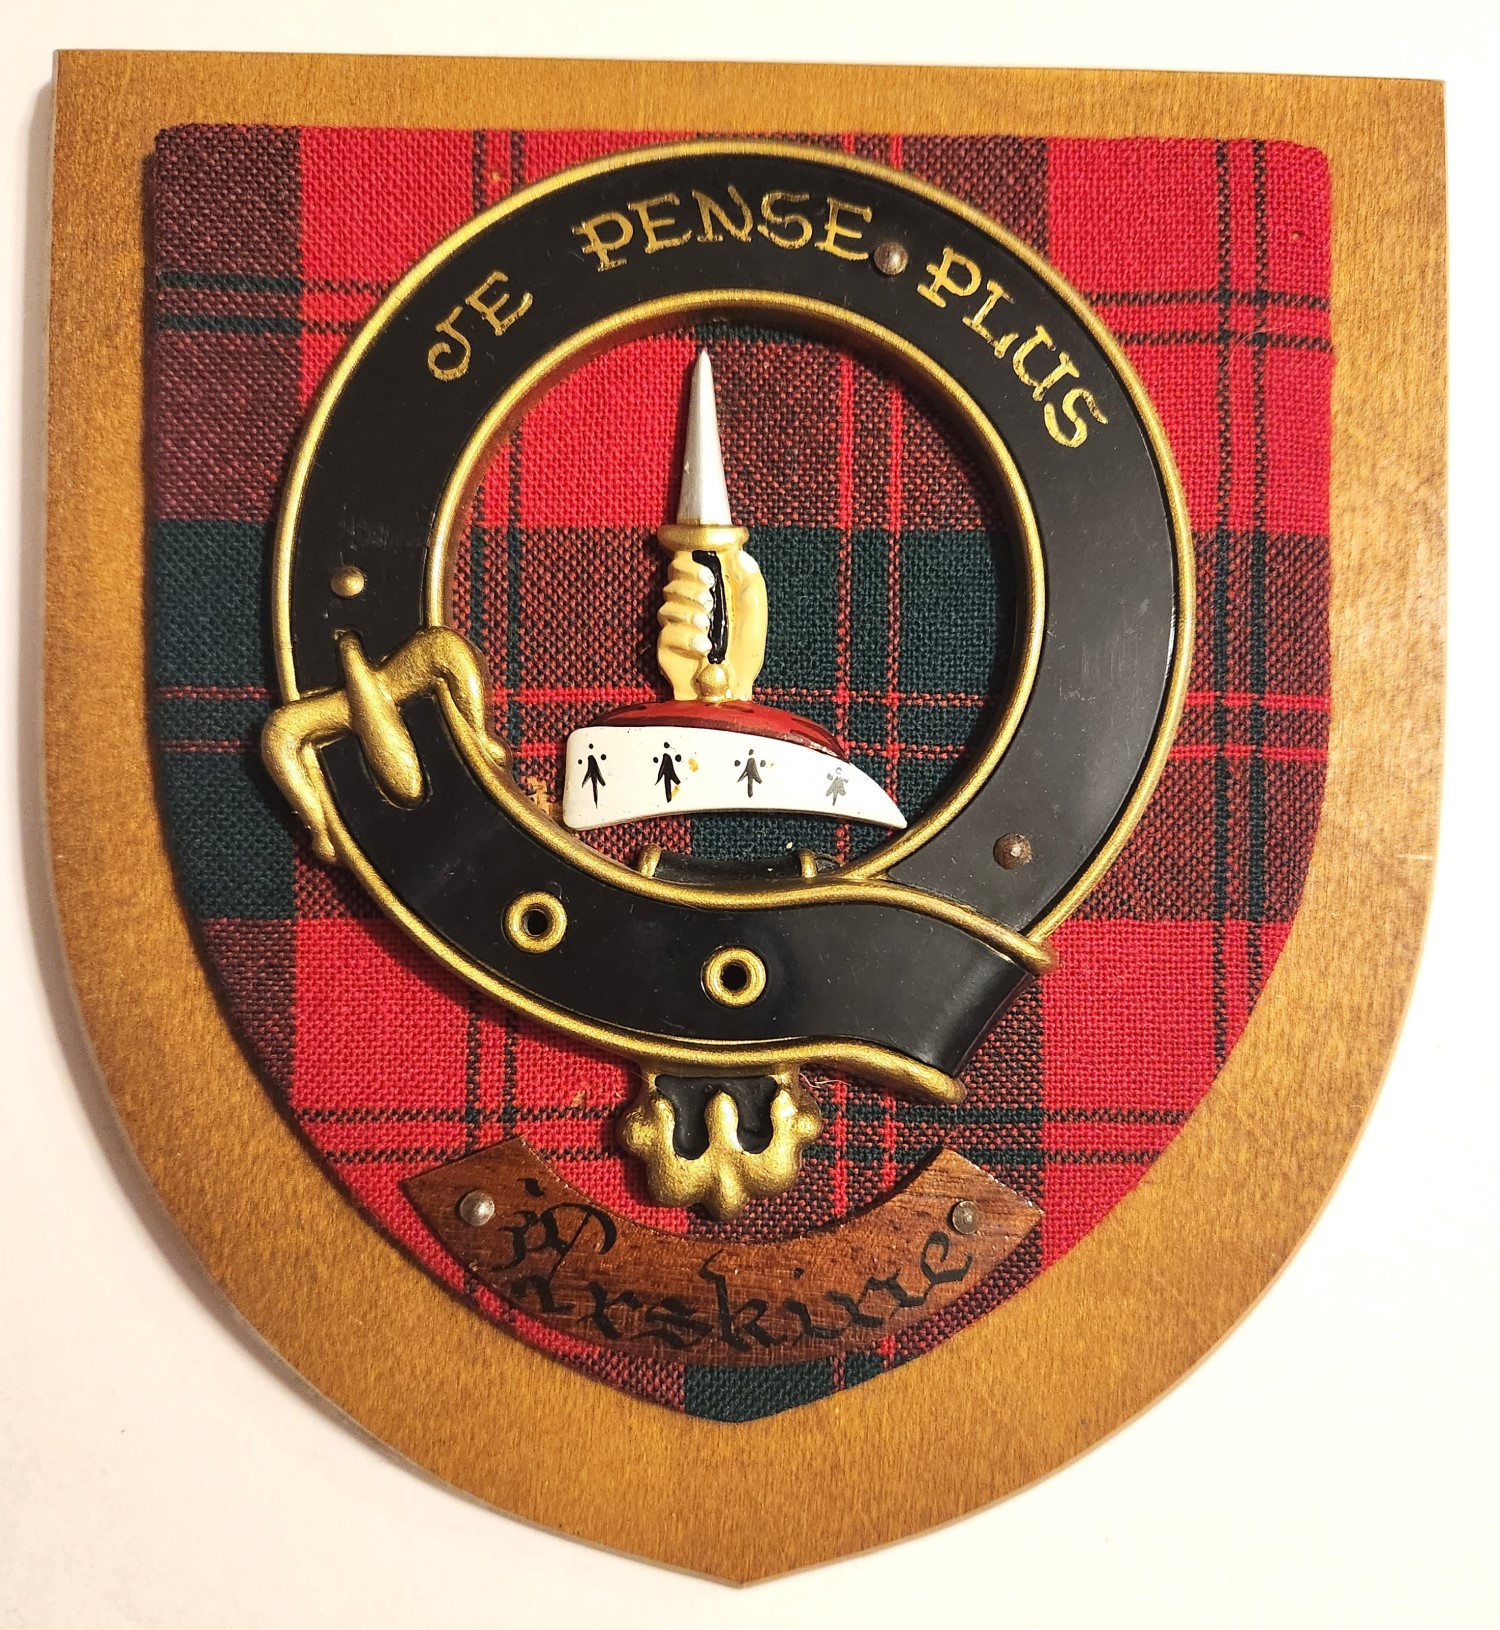 Erskine Scottish Clan Plaque